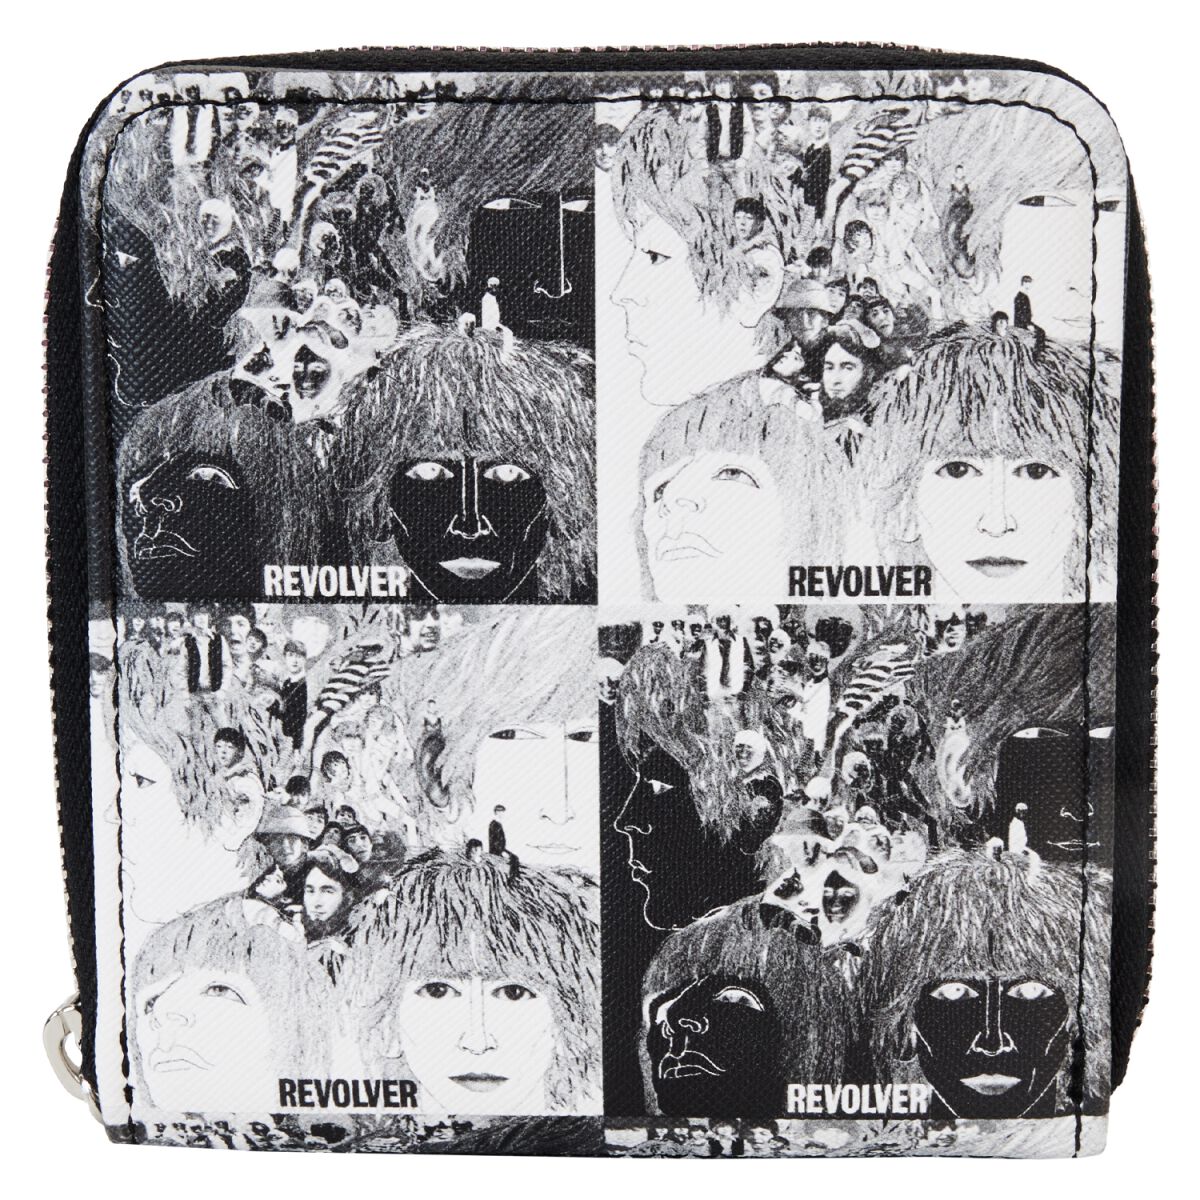 The Beatles Geldbörse - Loungefly - Revolver Album - für Damen - schwarz/weiß  - Lizenziertes Merchandise!